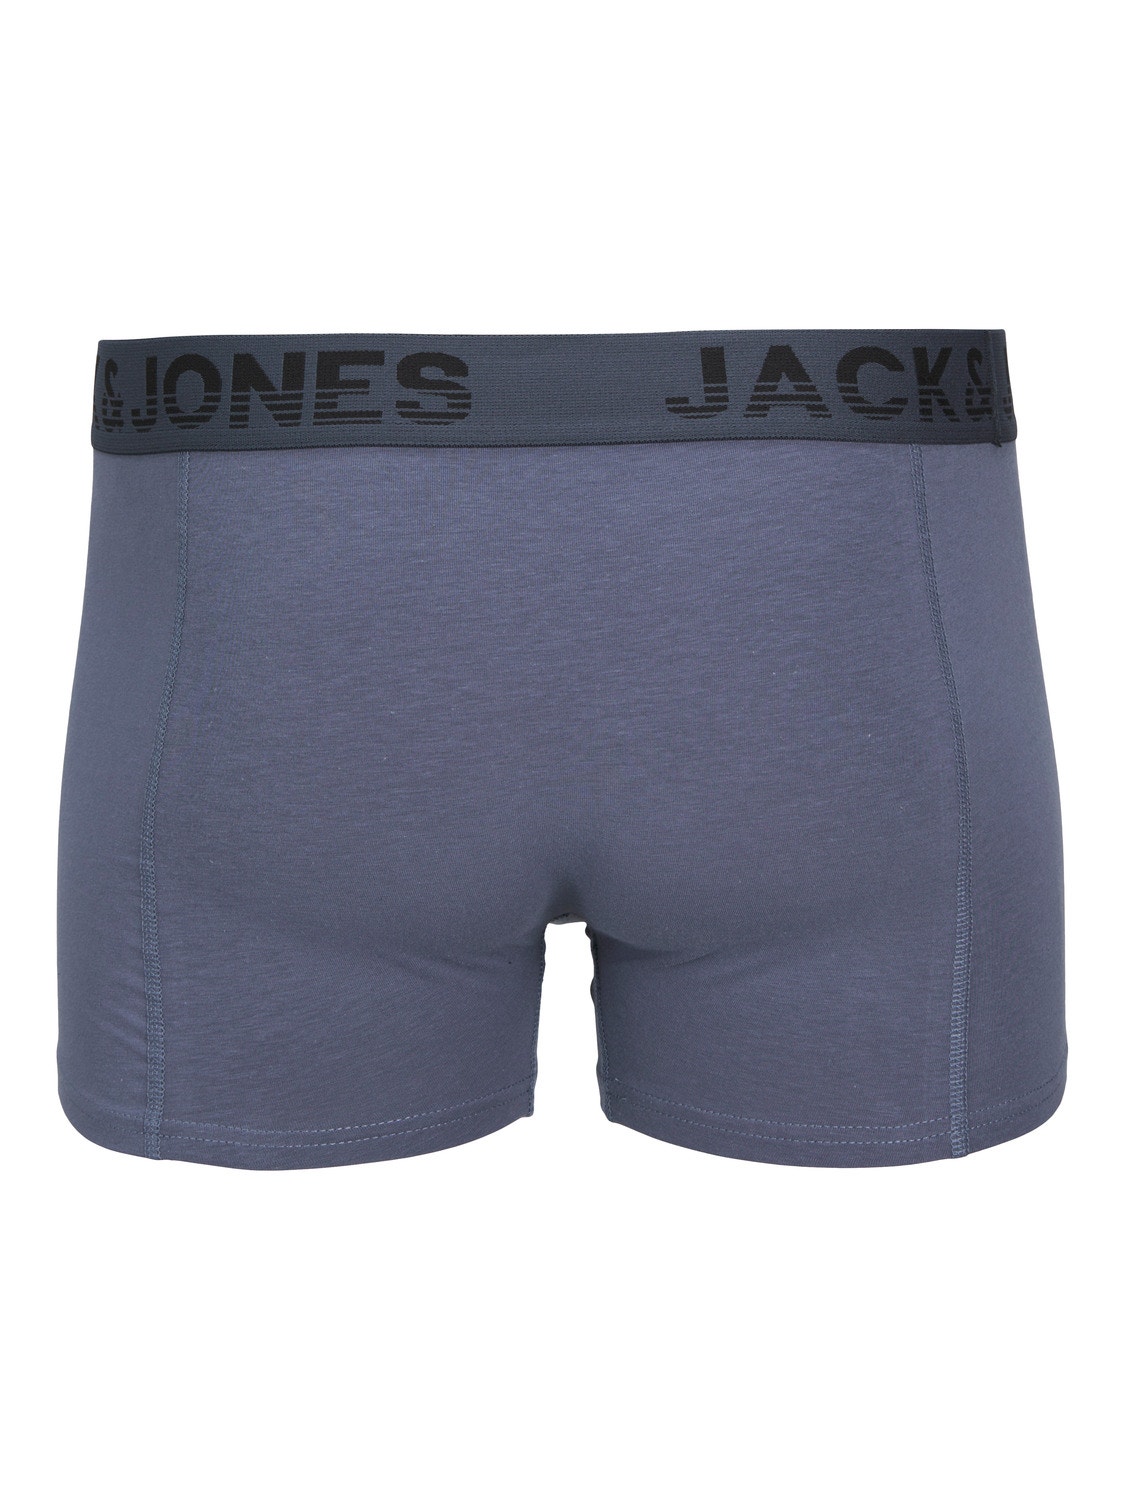 Jack & Jones 3-pack Trunks -Black - 12250607